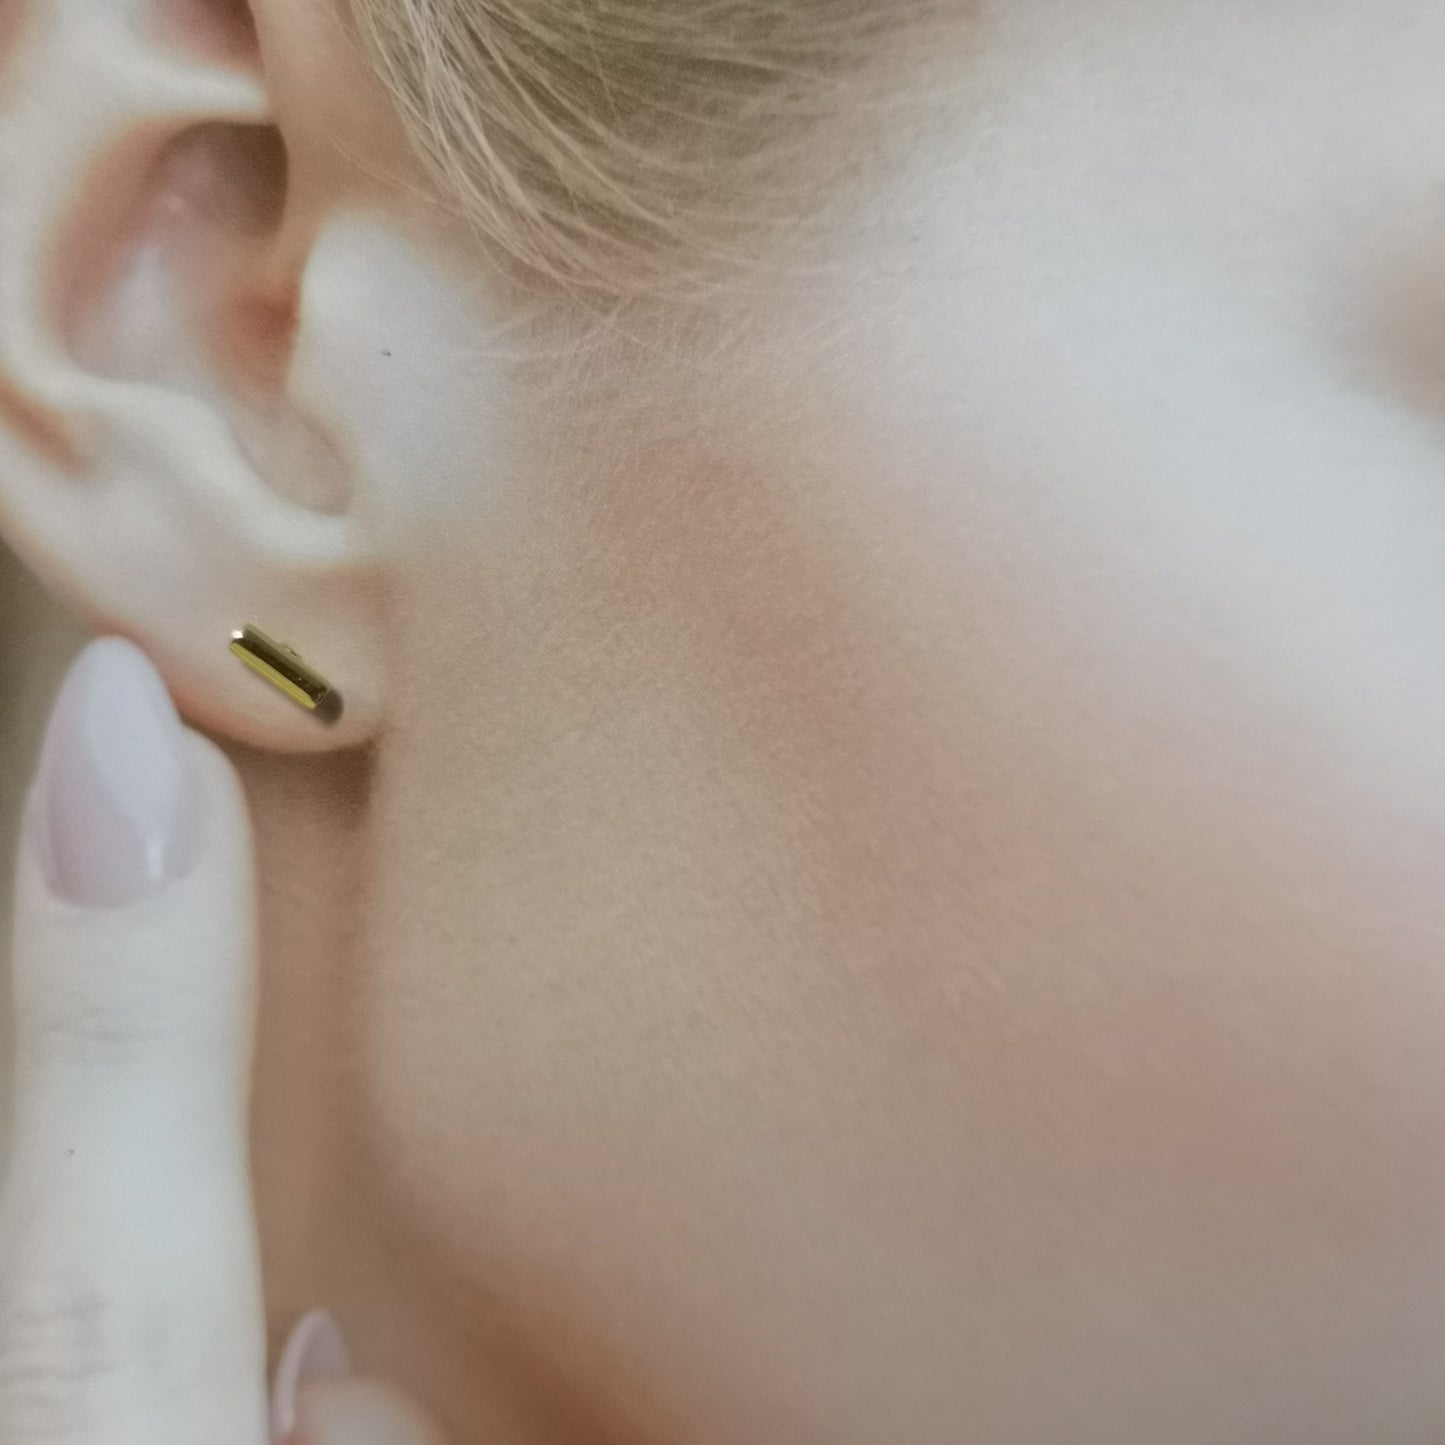 Pytte, 4 mm stick earrings